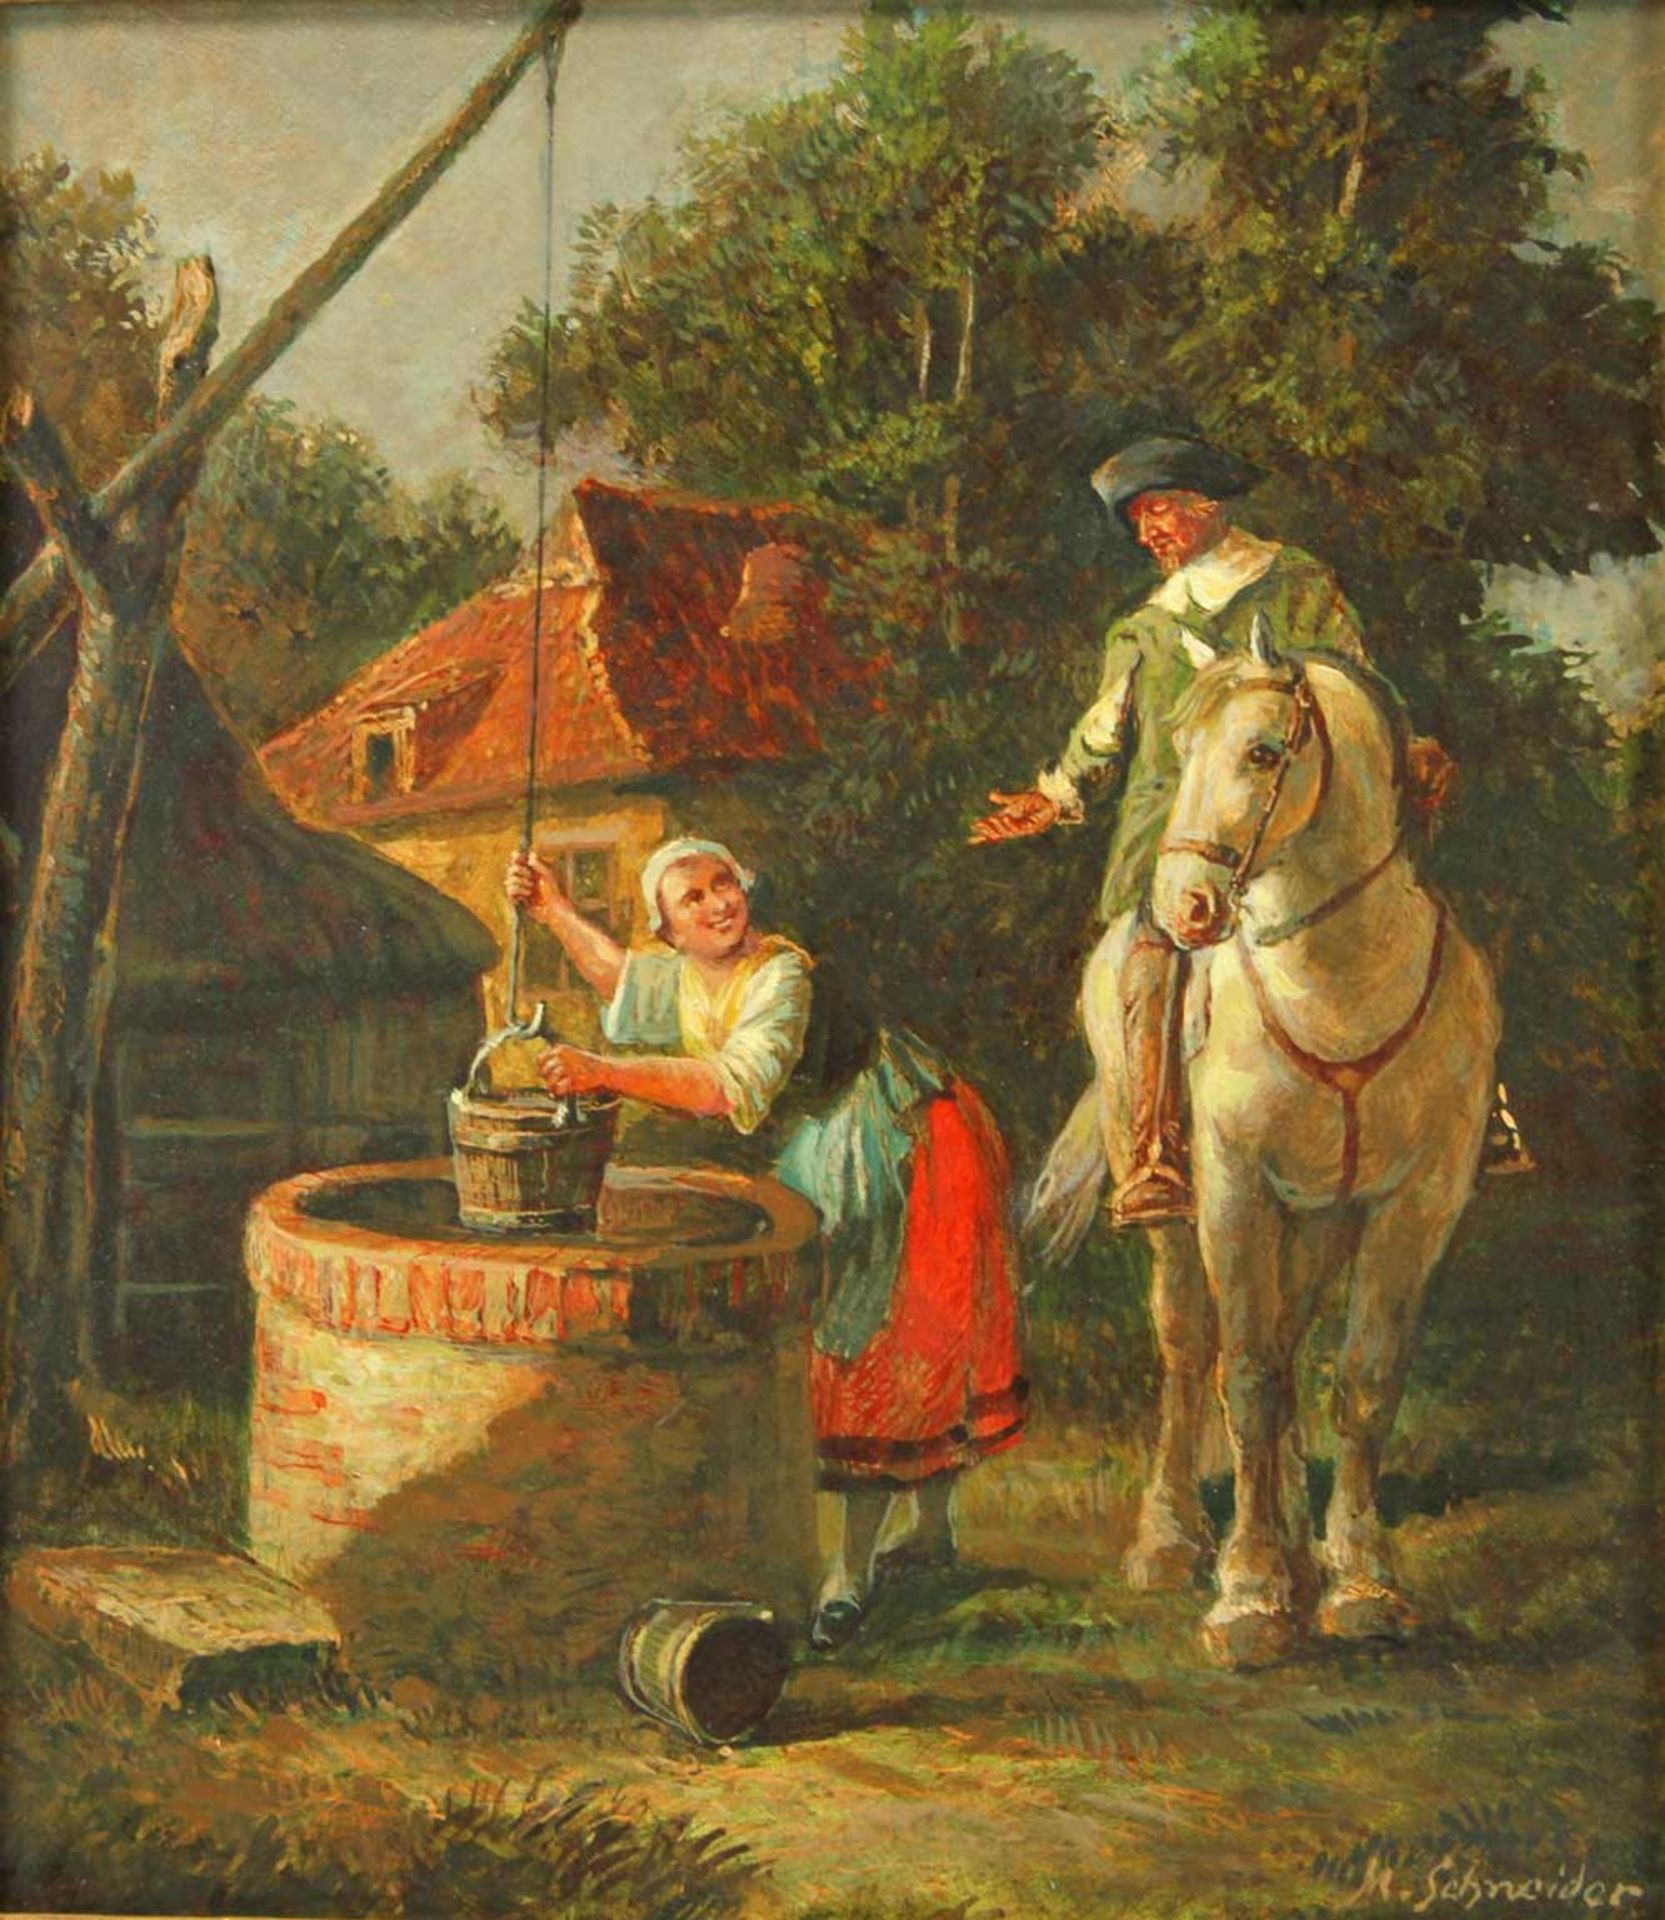 SCHNEIDER, M. (wohl Max Schneider; 1903-1980): Reiter zu Pferde mit Magd an einem Brunnen, 20. Jhd.,